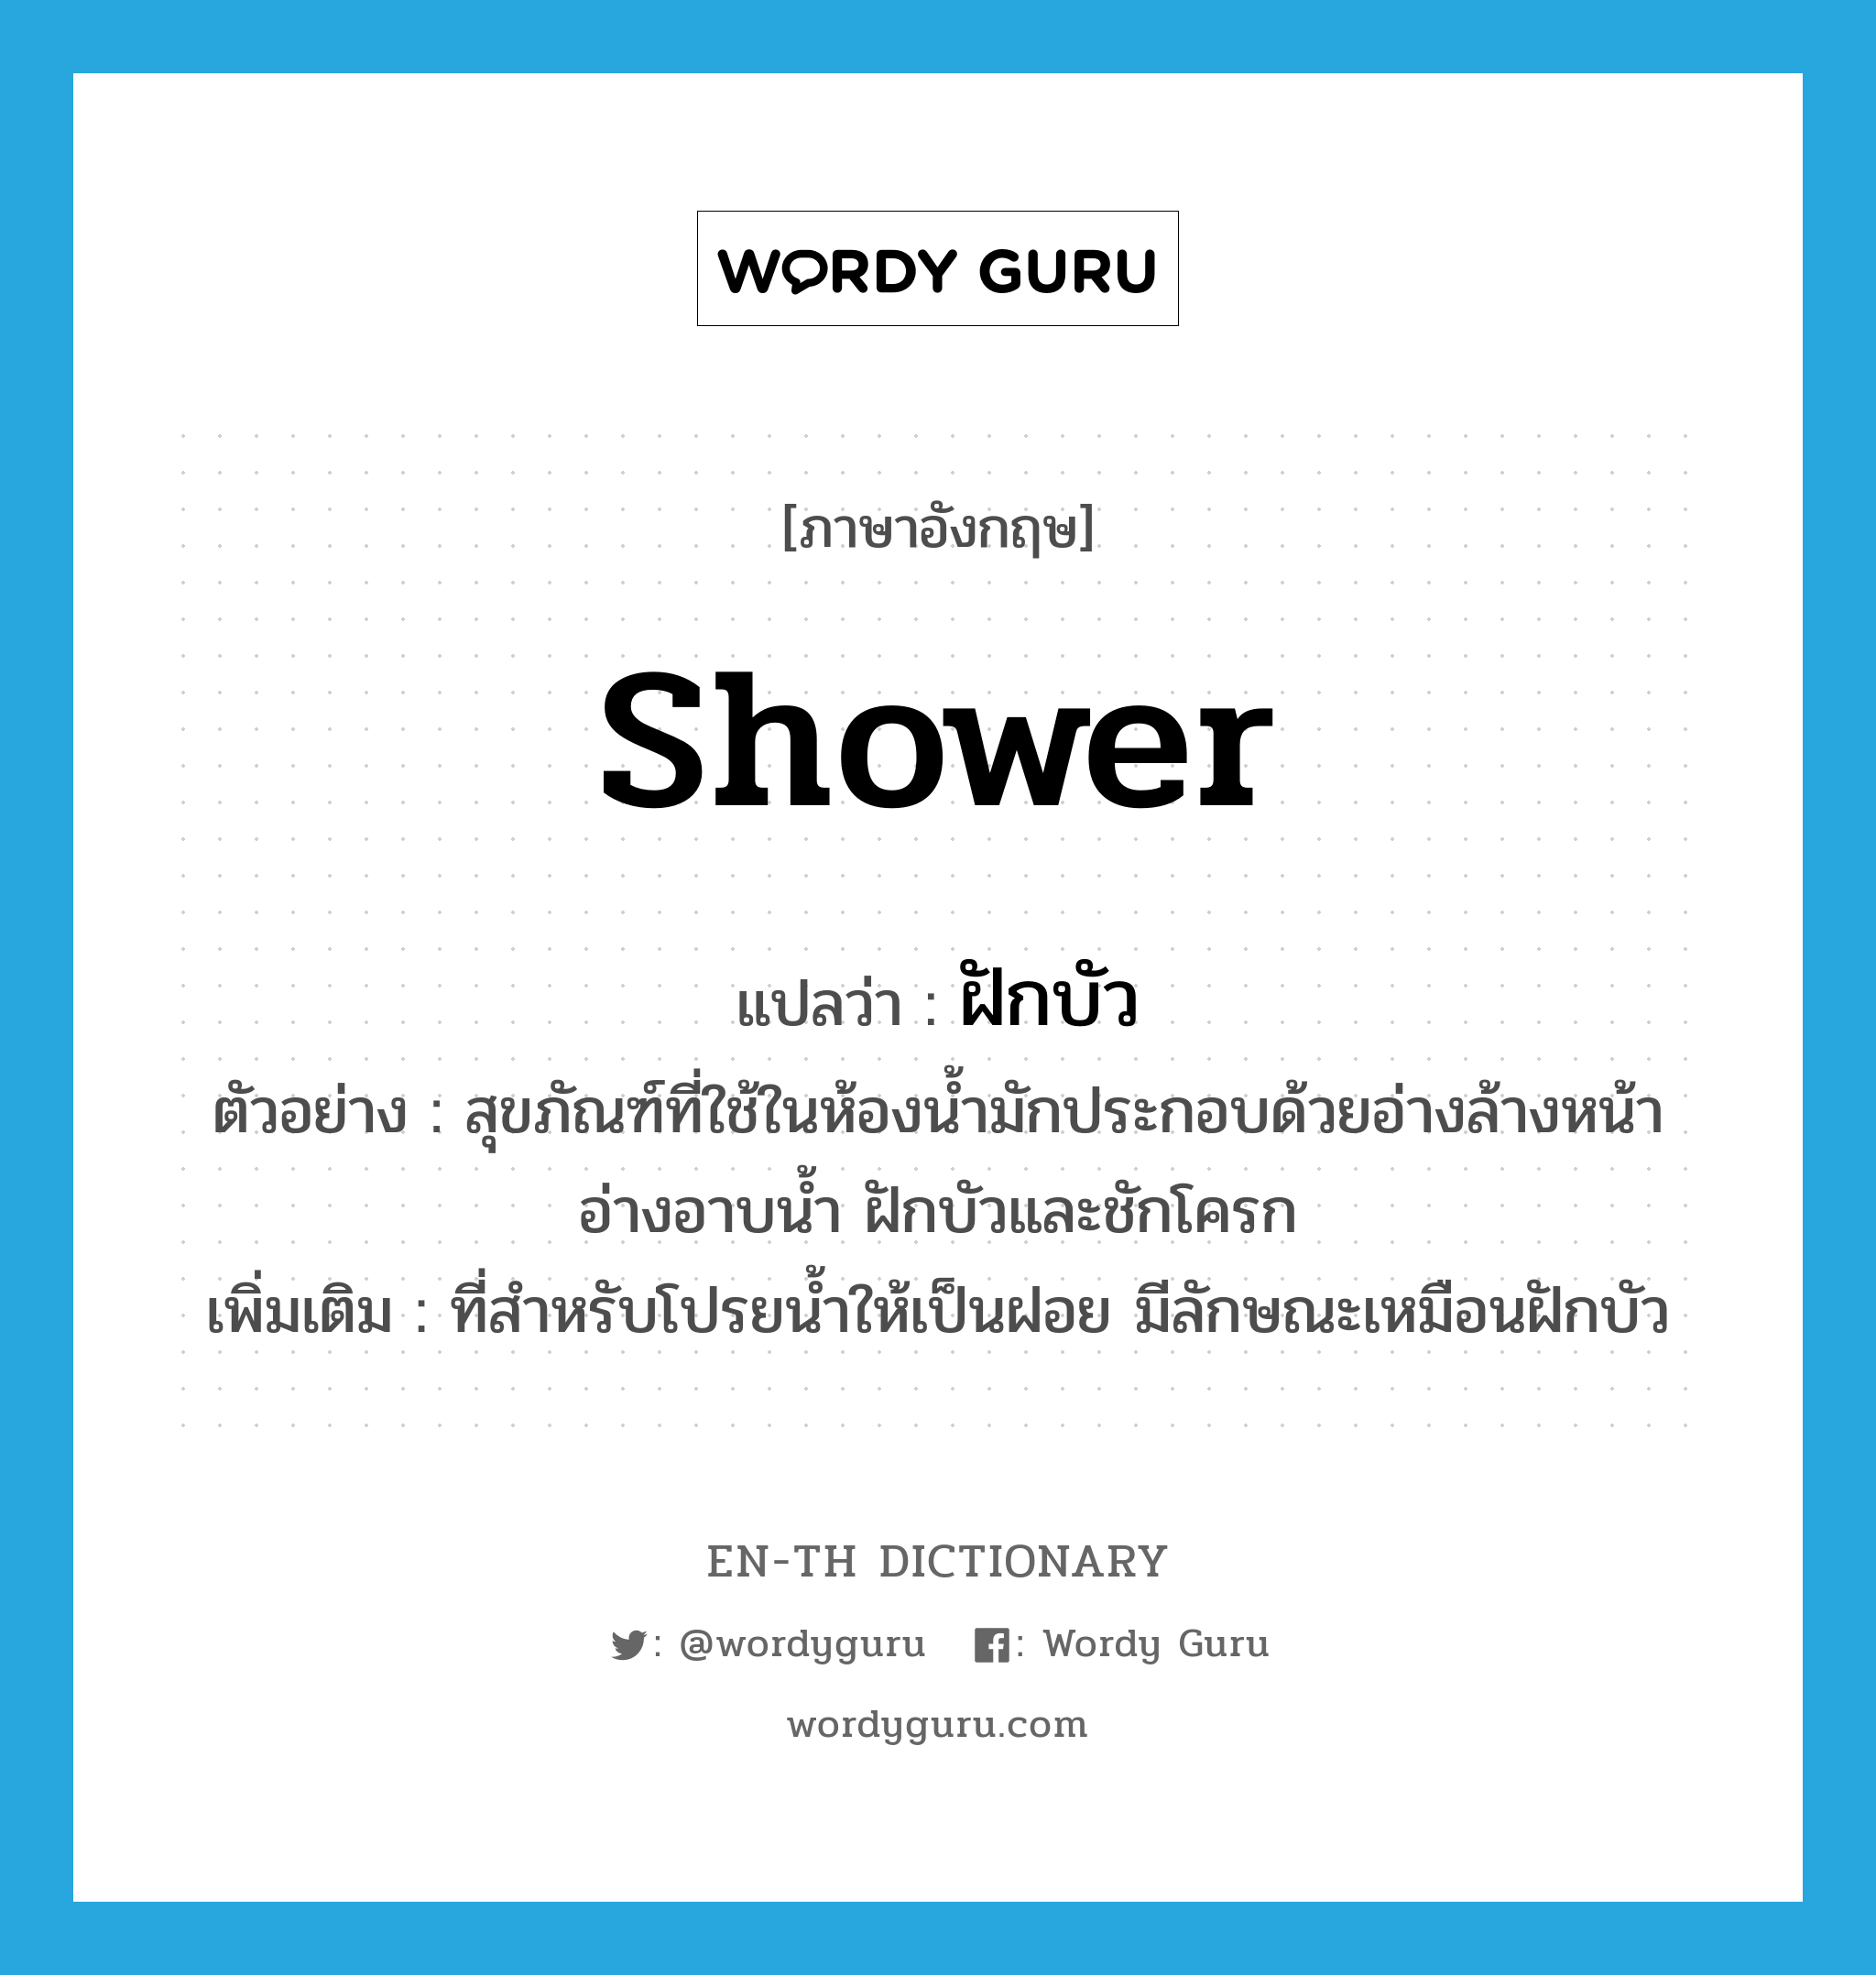 shower แปลว่า?, คำศัพท์ภาษาอังกฤษ shower แปลว่า ฝักบัว ประเภท N ตัวอย่าง สุขภัณฑ์ที่ใช้ในห้องน้ำมักประกอบด้วยอ่างล้างหน้า อ่างอาบน้ำ ฝักบัวและชักโครก เพิ่มเติม ที่สำหรับโปรยน้ำให้เป็นฝอย มีลักษณะเหมือนฝักบัว หมวด N